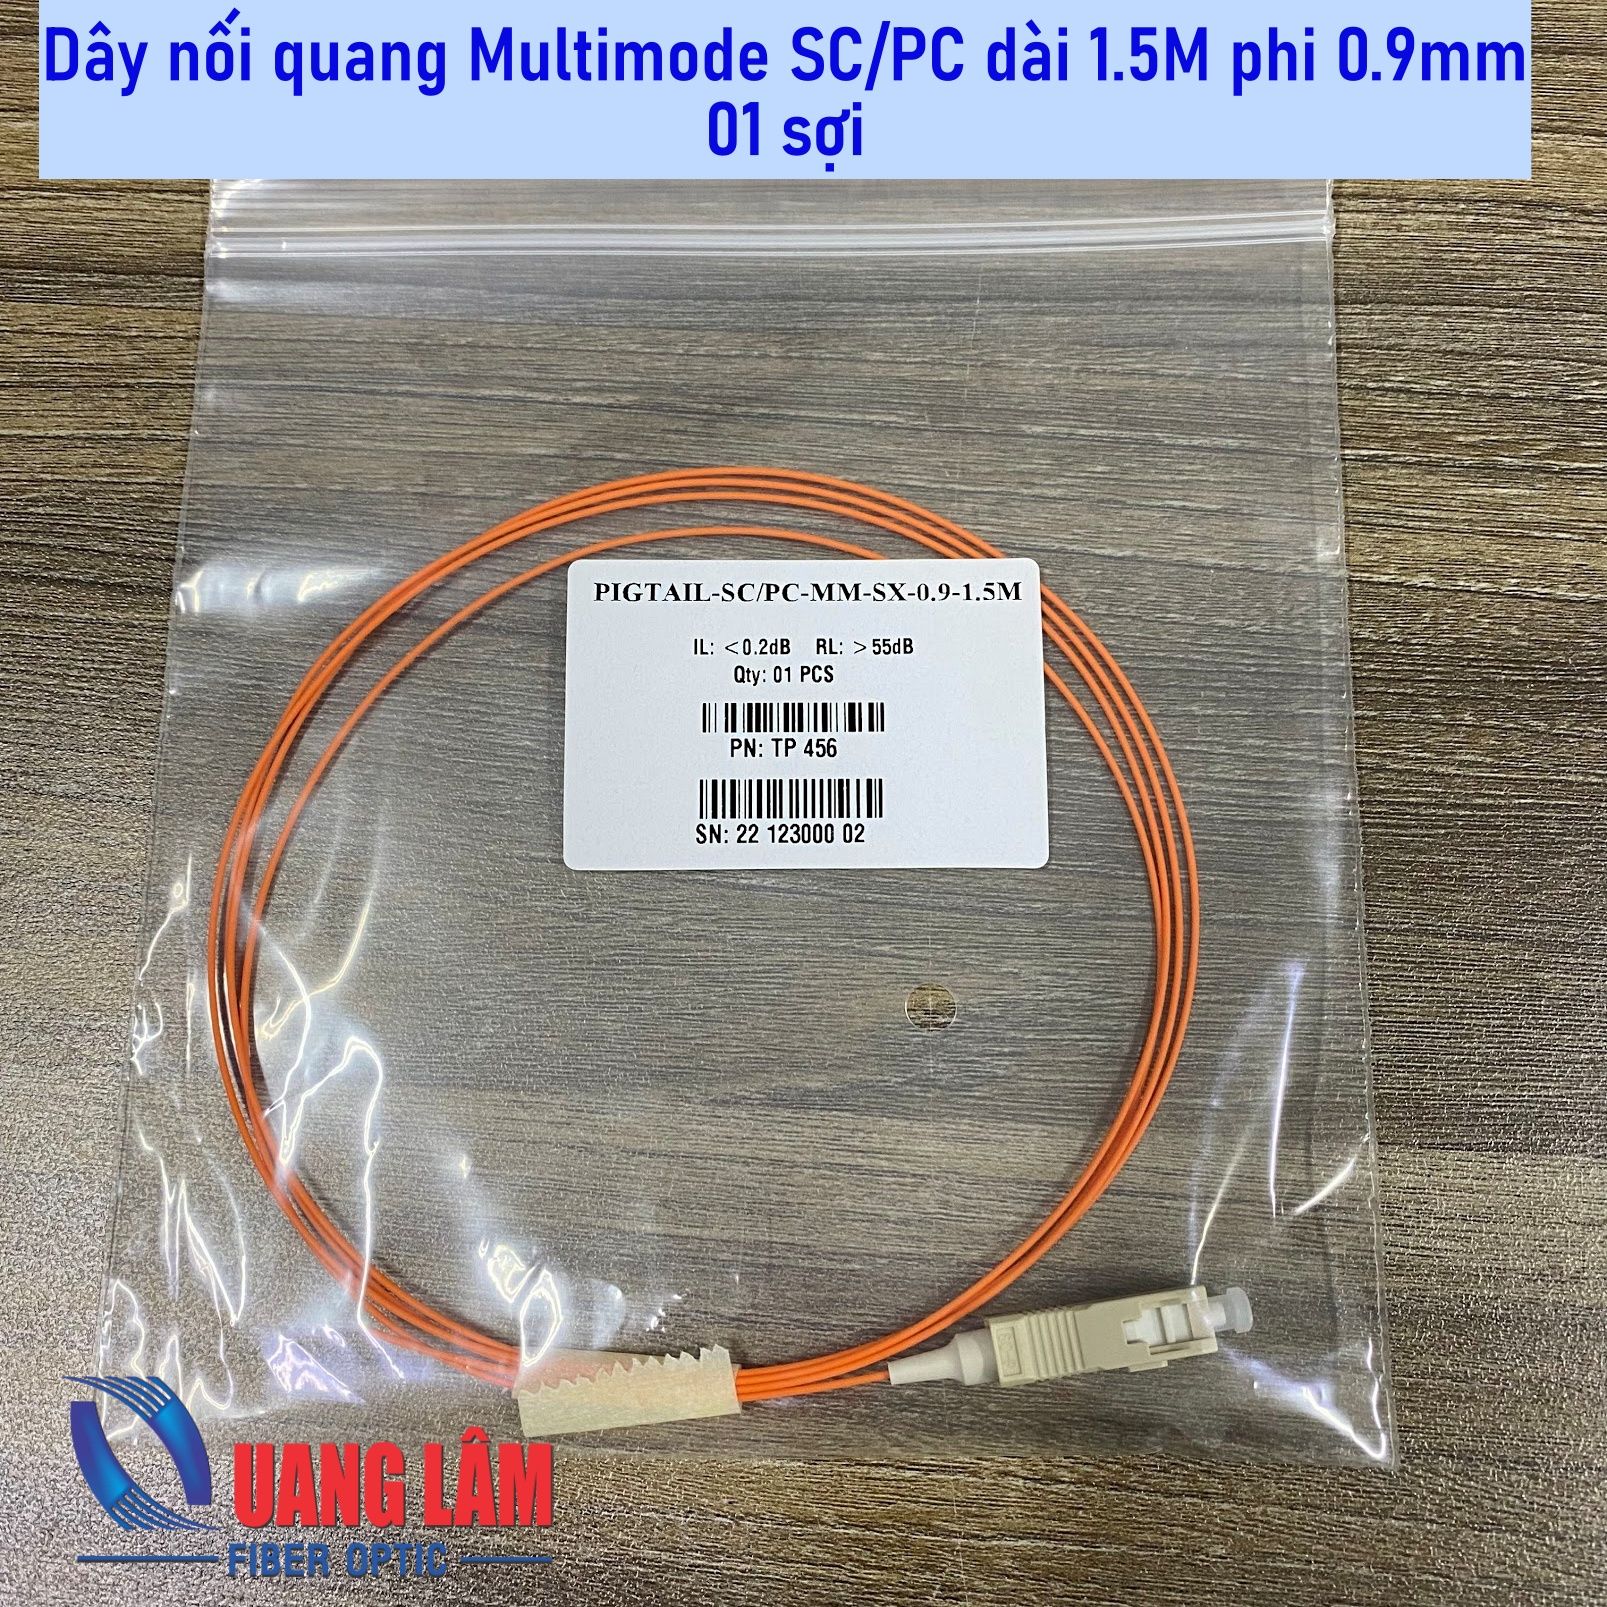 Dây hàn quang nối quang Multimode OM2 SC/PC dài 1.5M phi 0.9mm (Dây Pigtail)